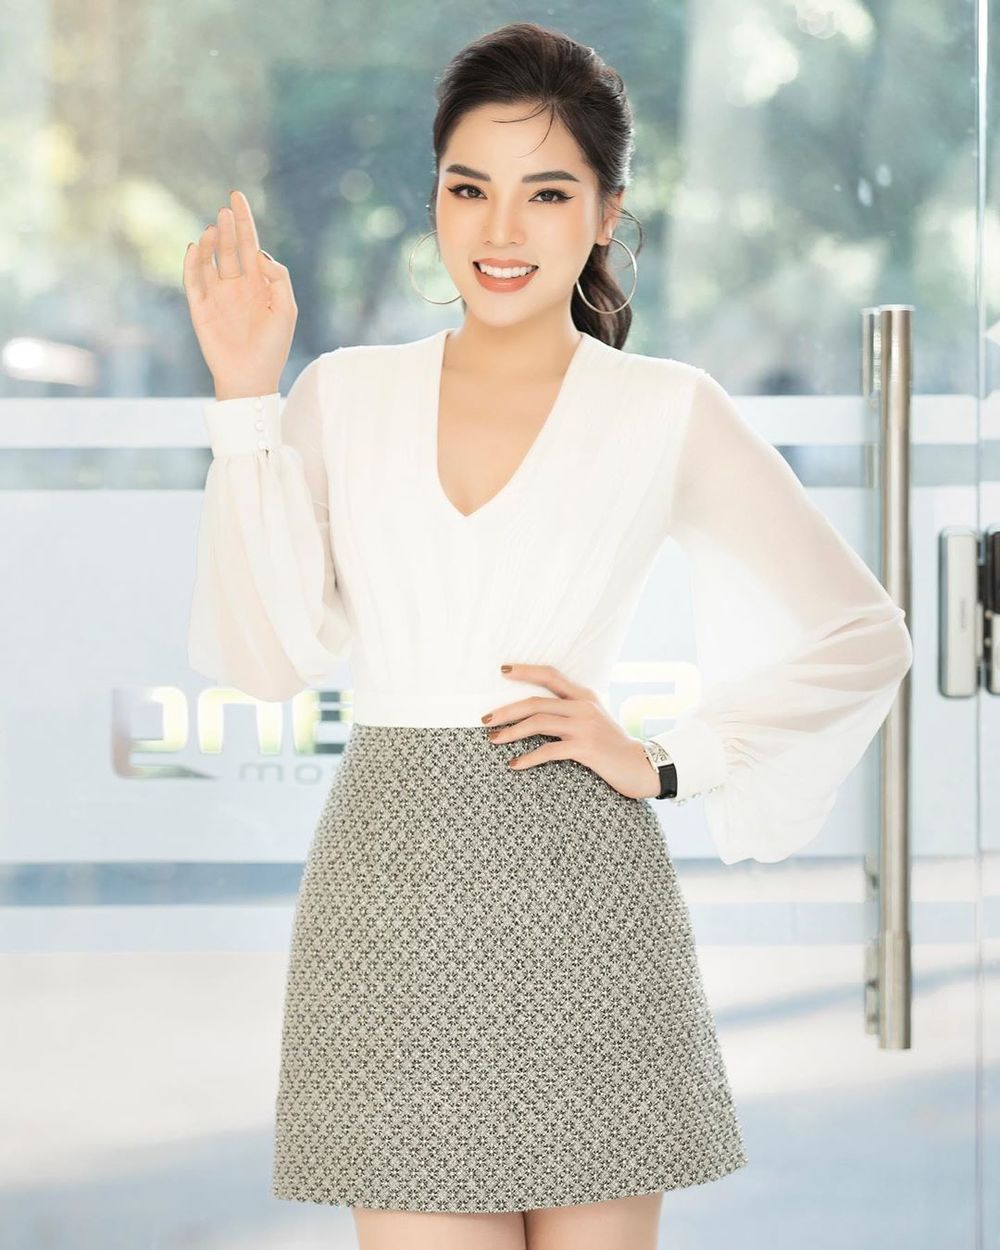  
Kỳ Duyên diện đồ thanh lịch, đeo đồng hồ tiền tỷ, trở lại với Hoa hậu Việt Nam 2020 với tư cách cố vấn. (Ảnh: Instagram nhân vật)